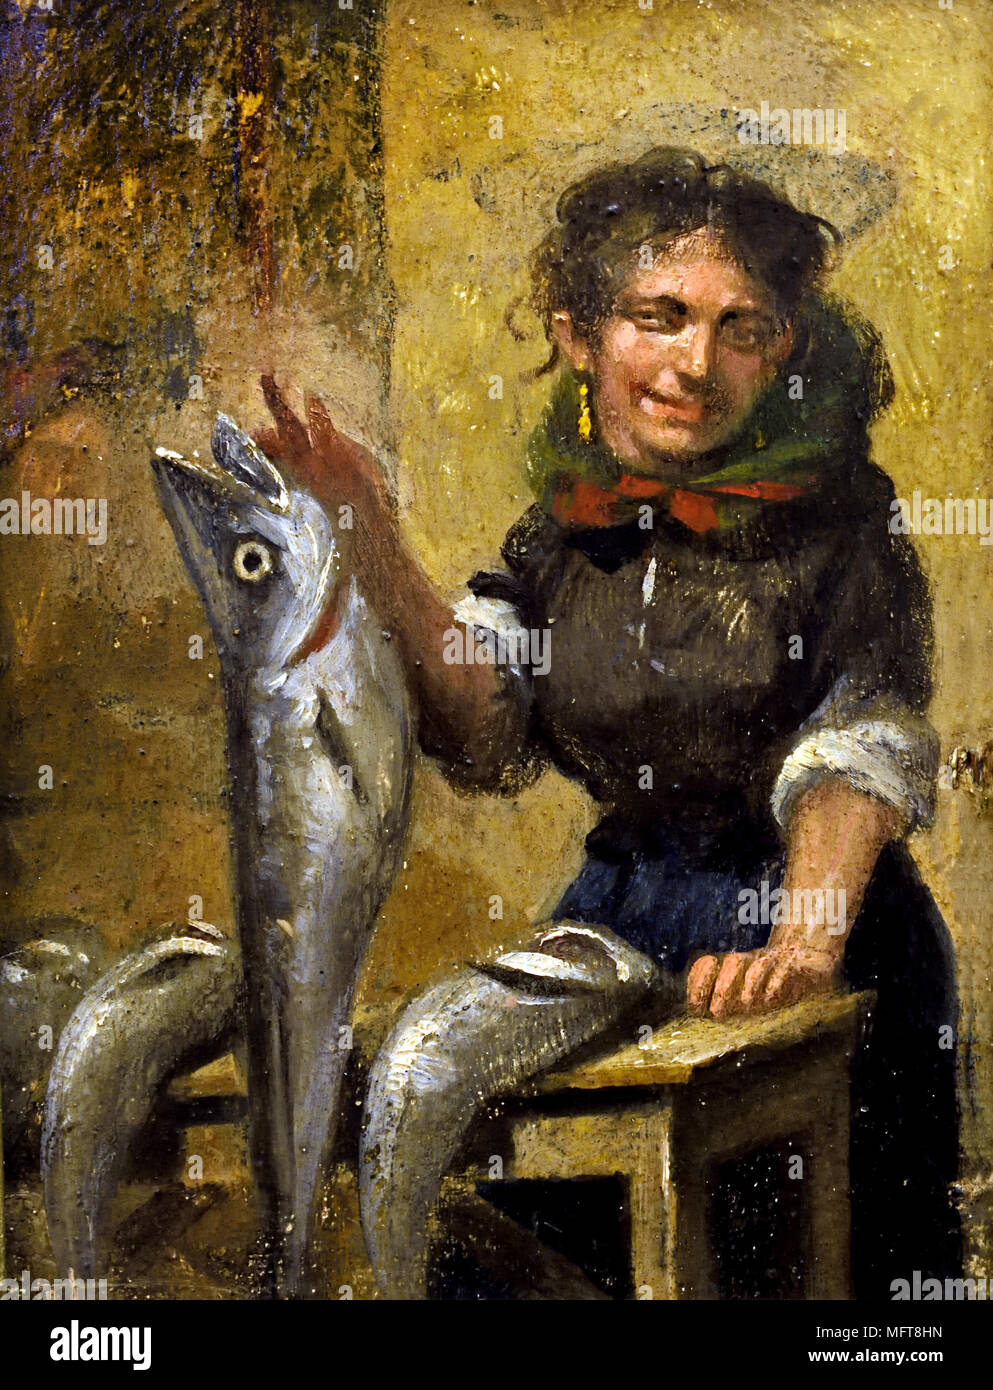 Vendedora de Peixe - venditore di pesce da Francisco Augusta Flamengo 1852-1915 Portogallo, portoghese, Foto Stock